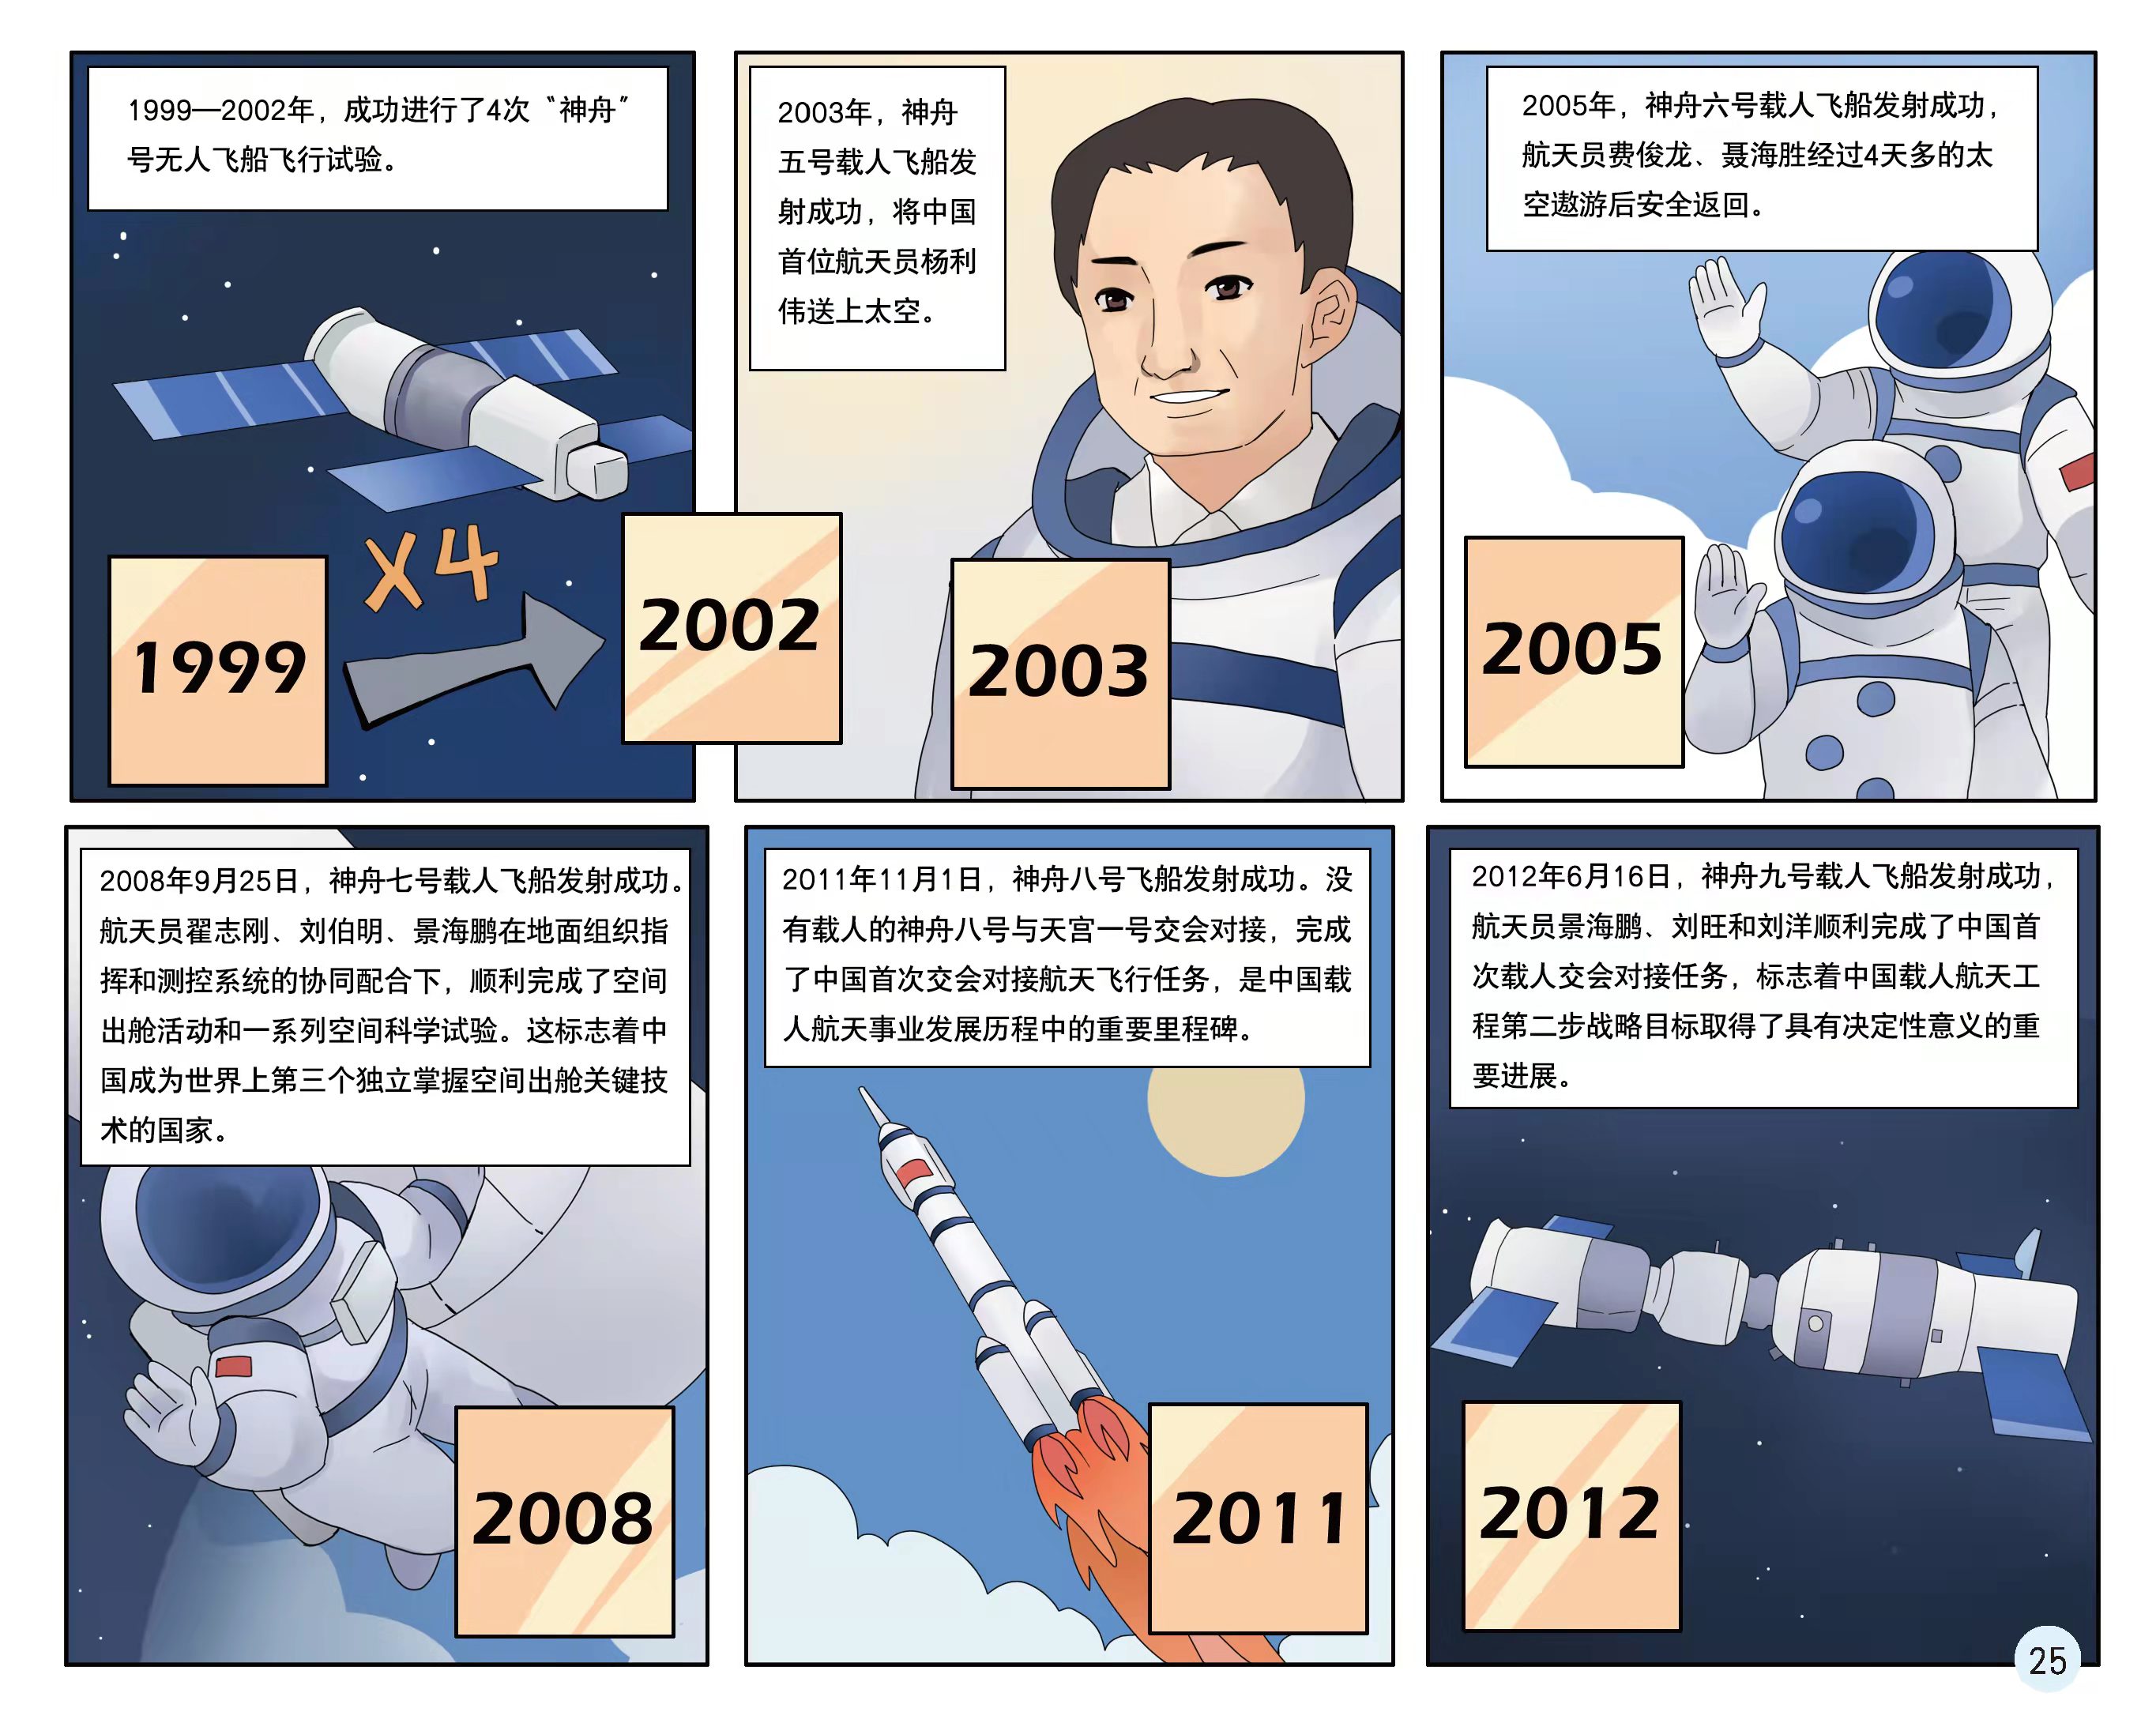 四张图回顾中国航天的发展历程